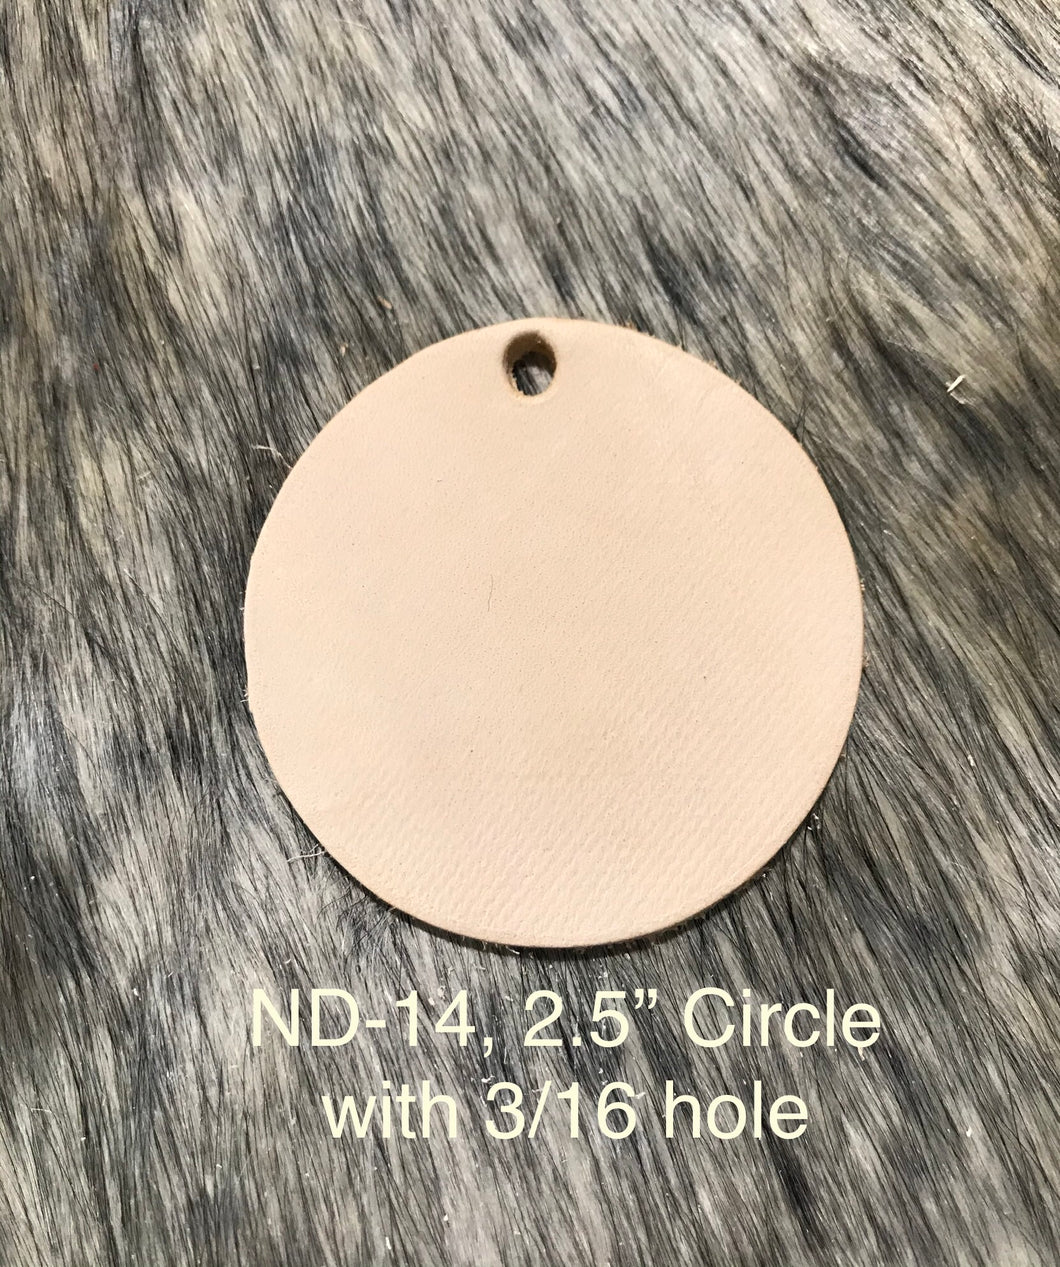 ND-14 2.5” Circle